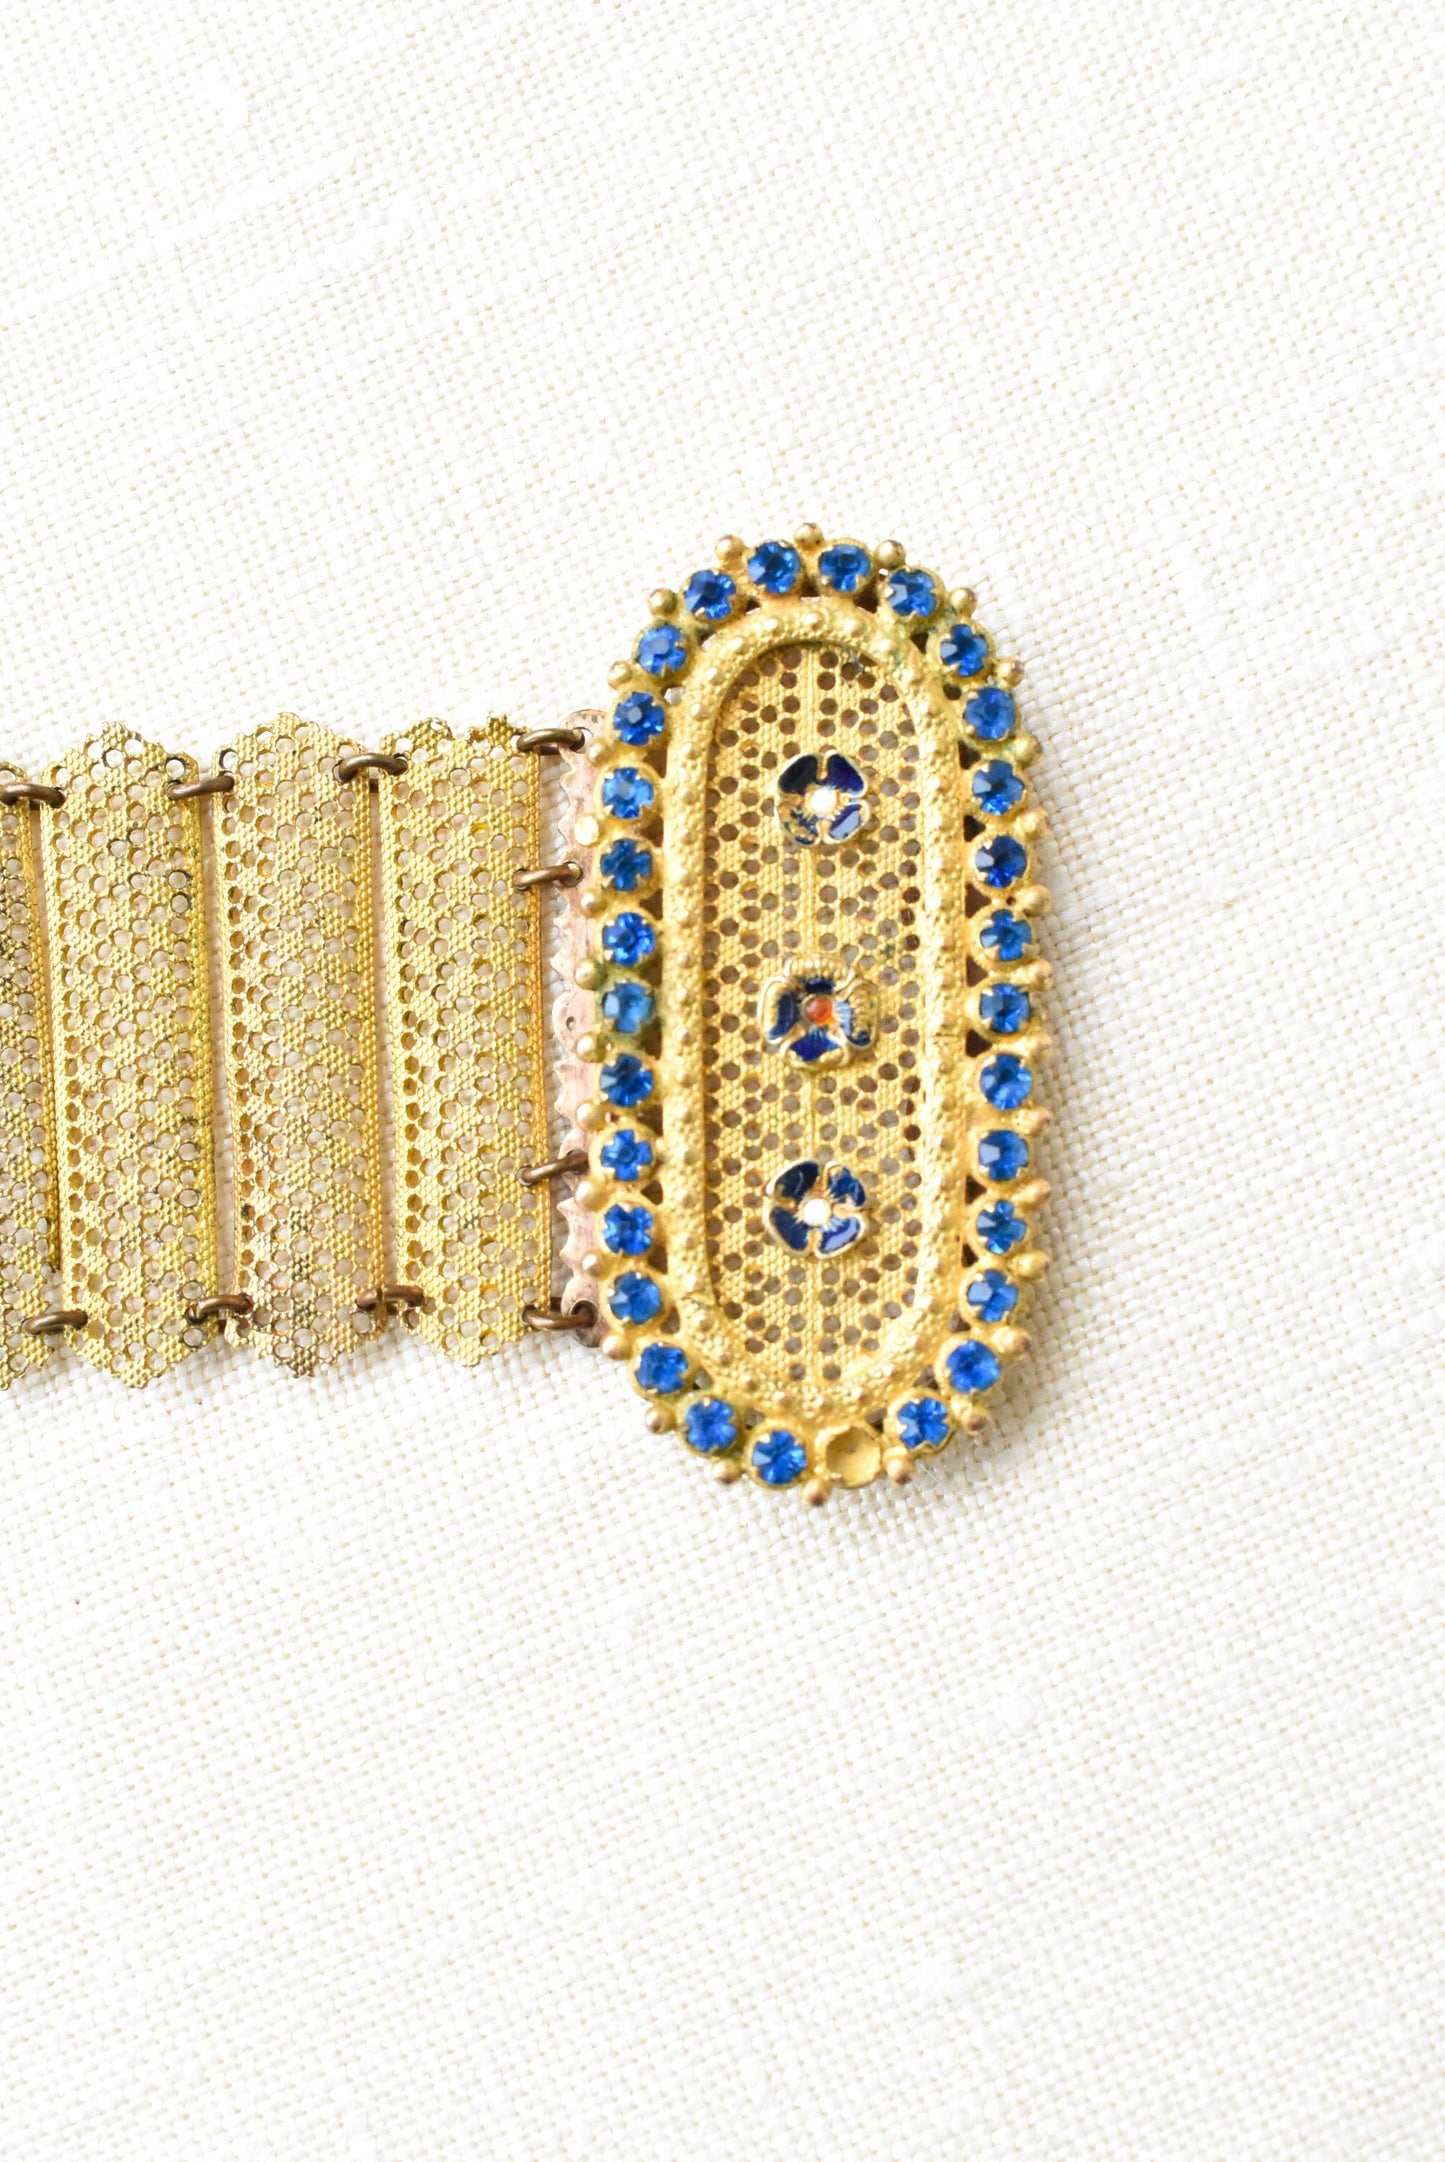 Vintage golden filigree bracelet